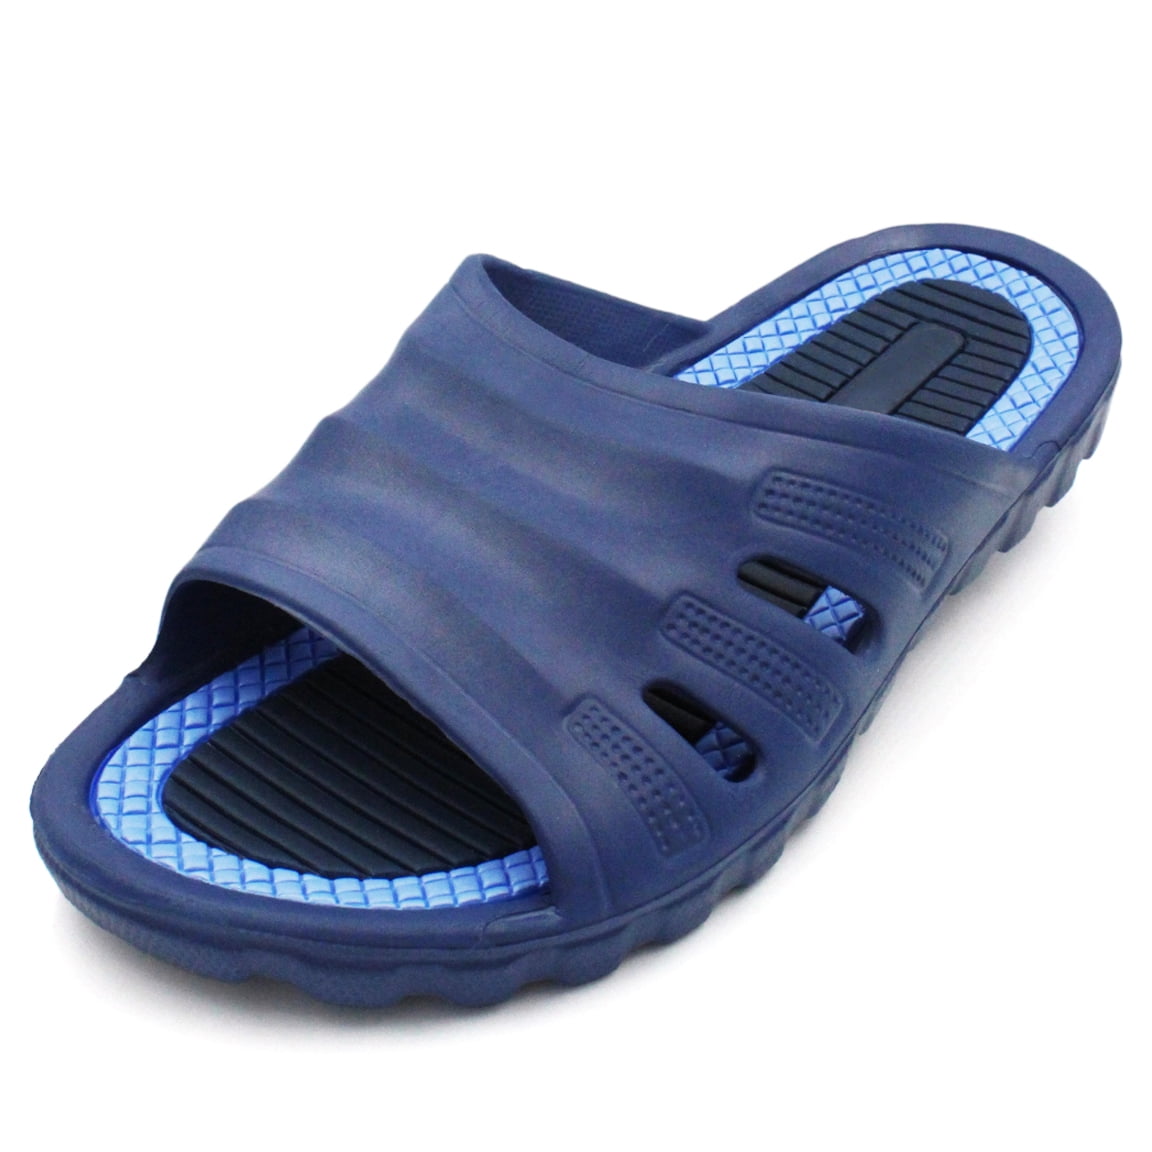 Mens Contrast Sports Summer Slider Slipper Flip Flop Sandals Size 7 8 9 10 11 12 